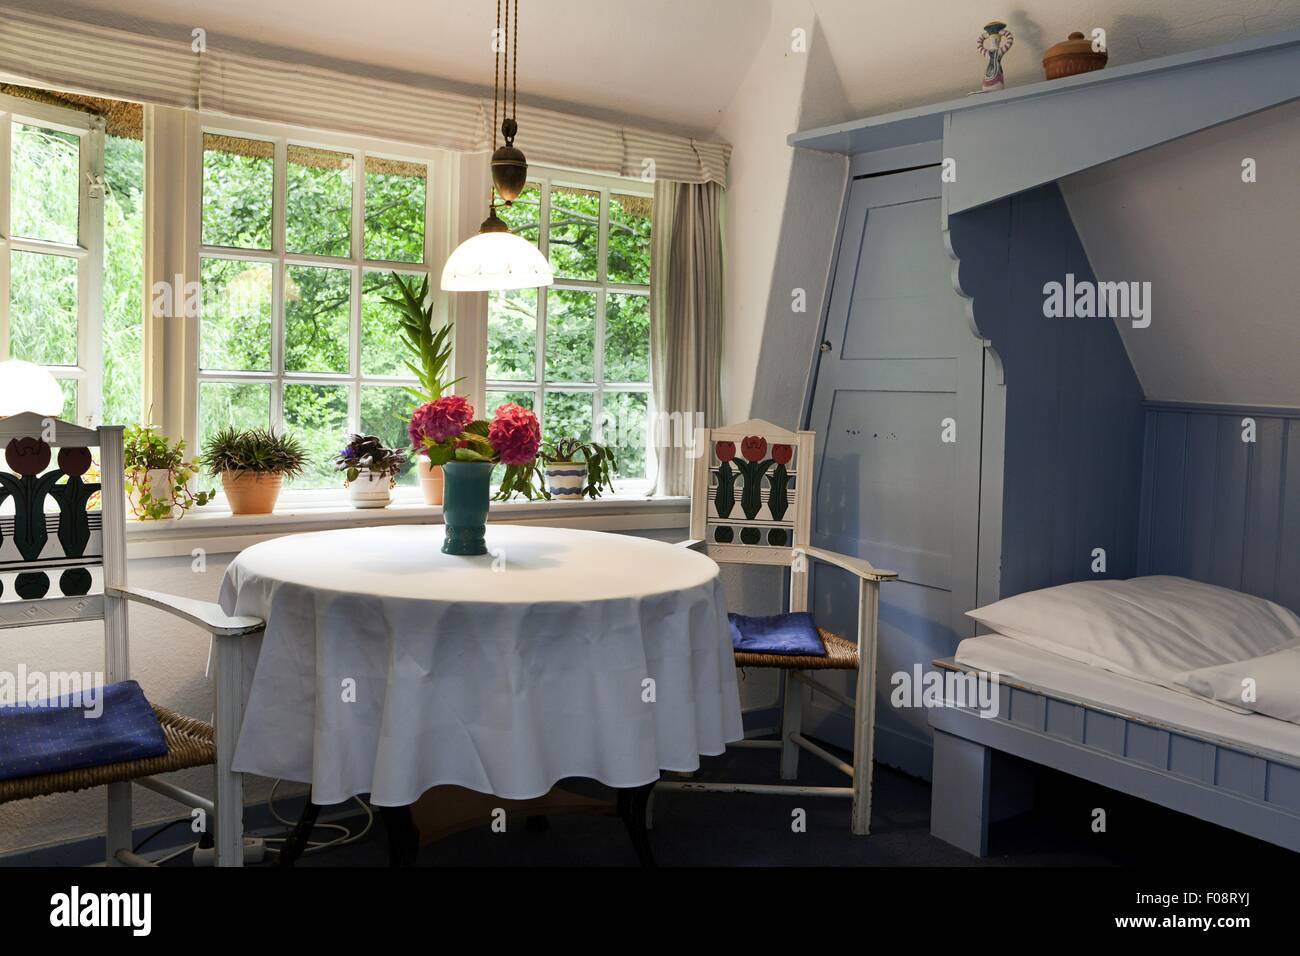 Intérieur de maison de retraite avec table et chaise, Worpswede, Allemagne Banque D'Images